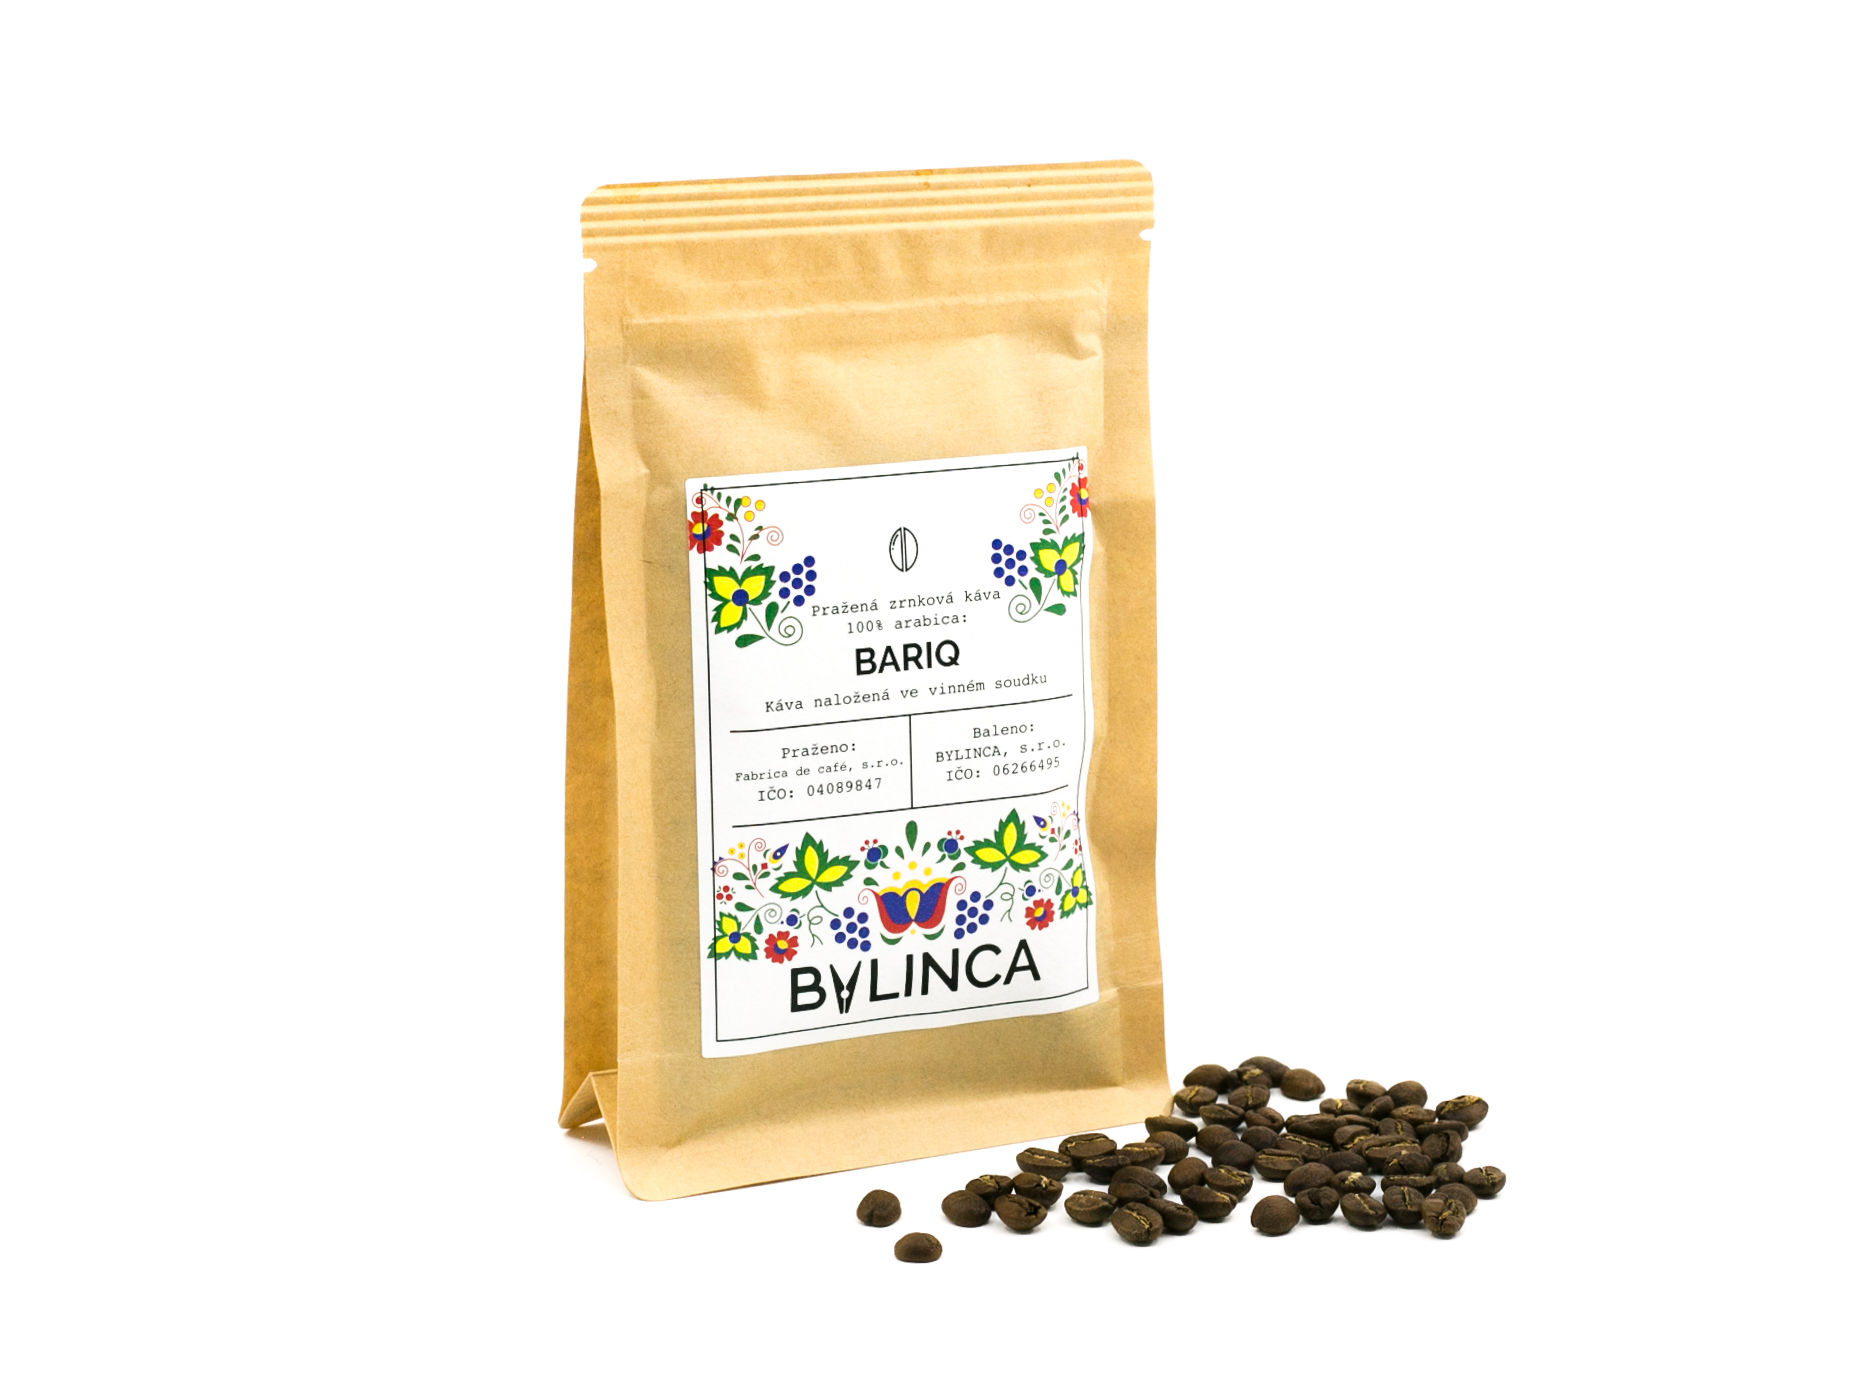 Zrnková káva: Bariq 100g, 250g, 500g, 1000g 1 ks: 1000g